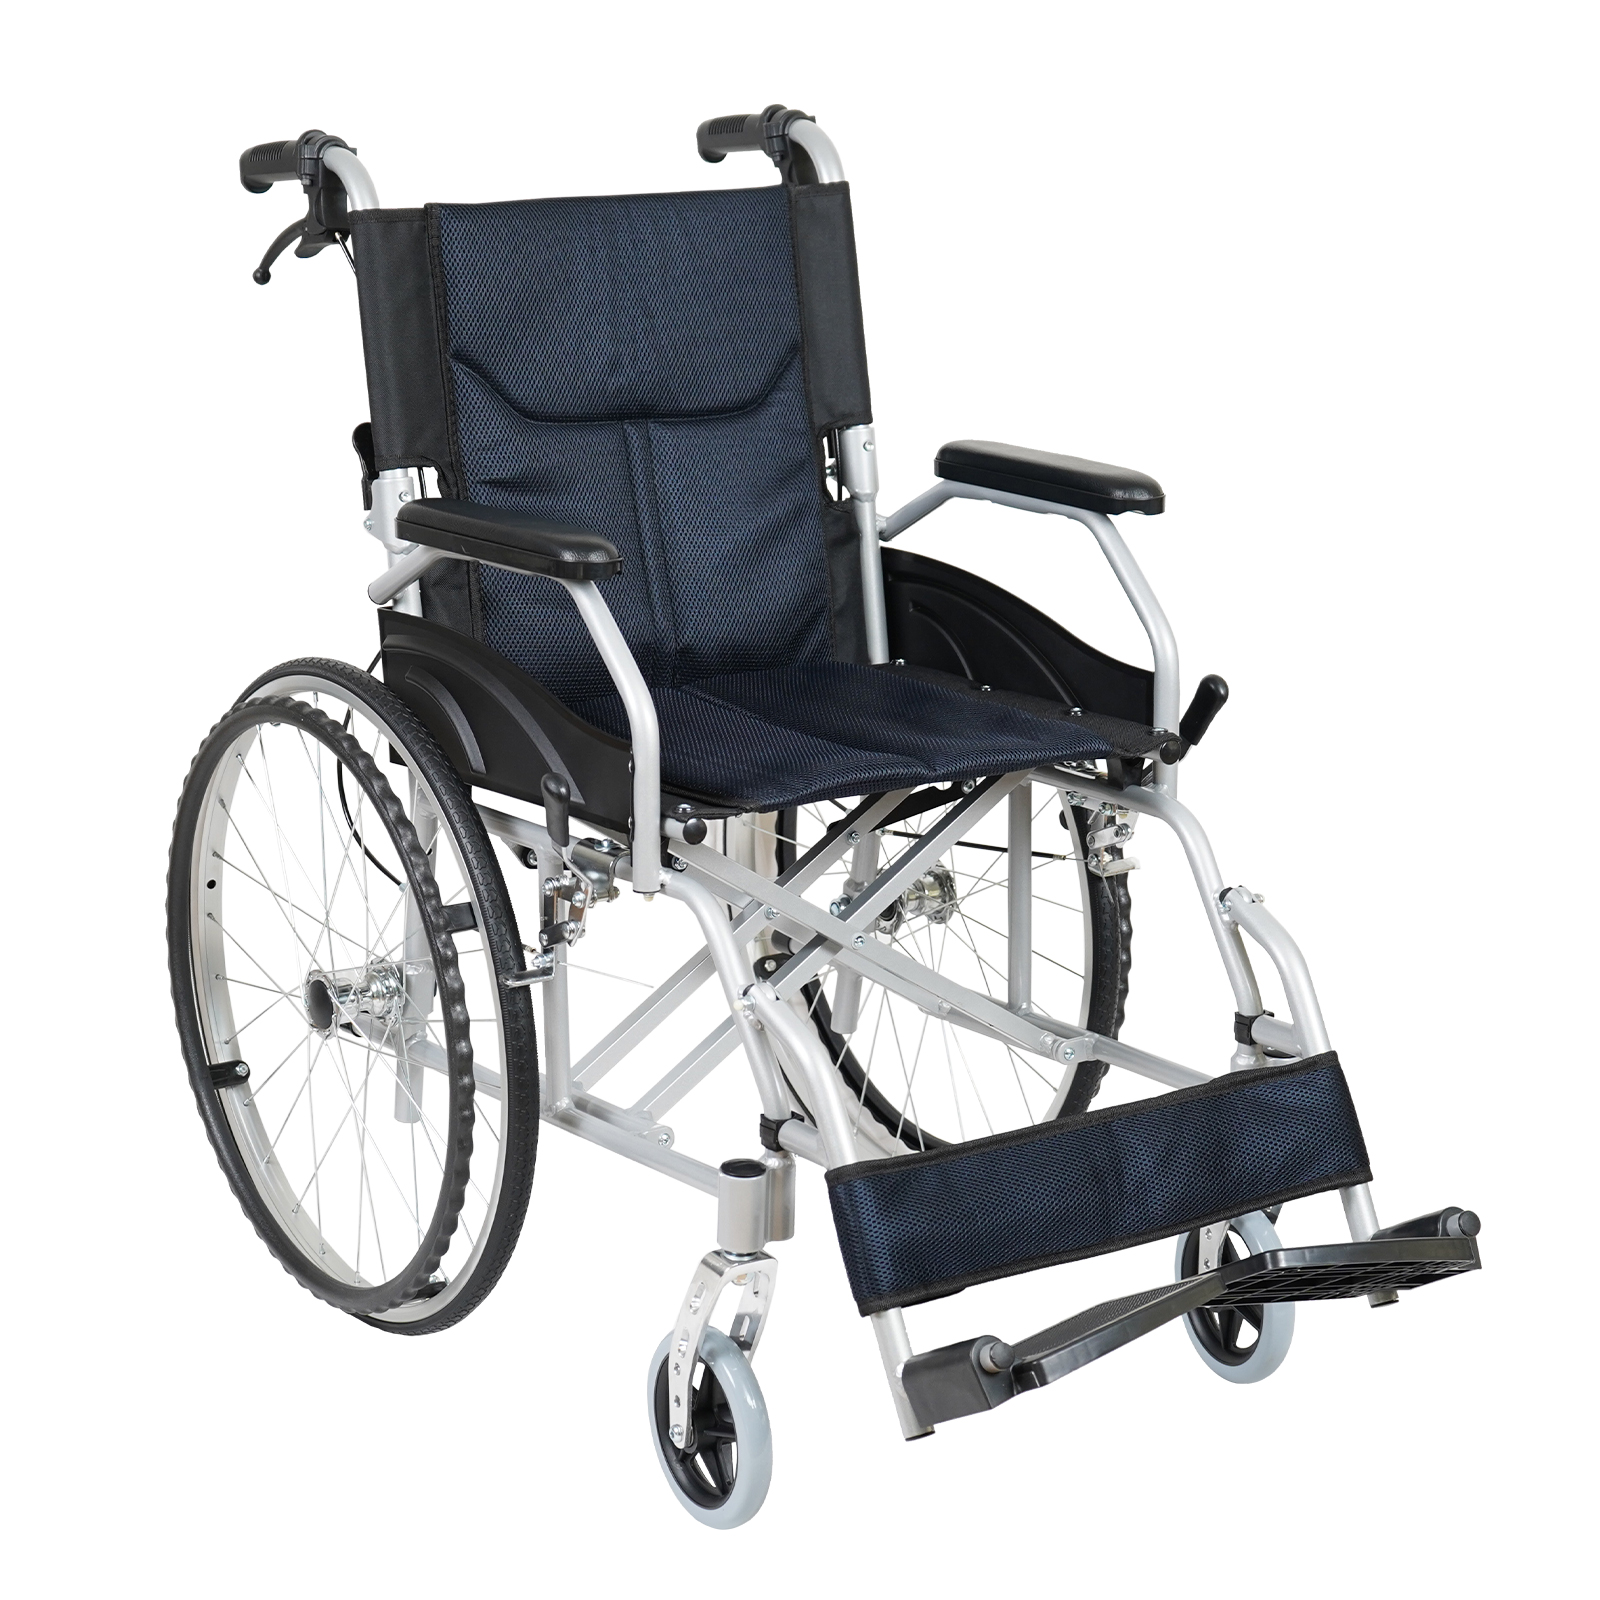 車椅子 軽量 コンパクト 自走式 介助 ブレーキ 折りたたみ 介護 車載 